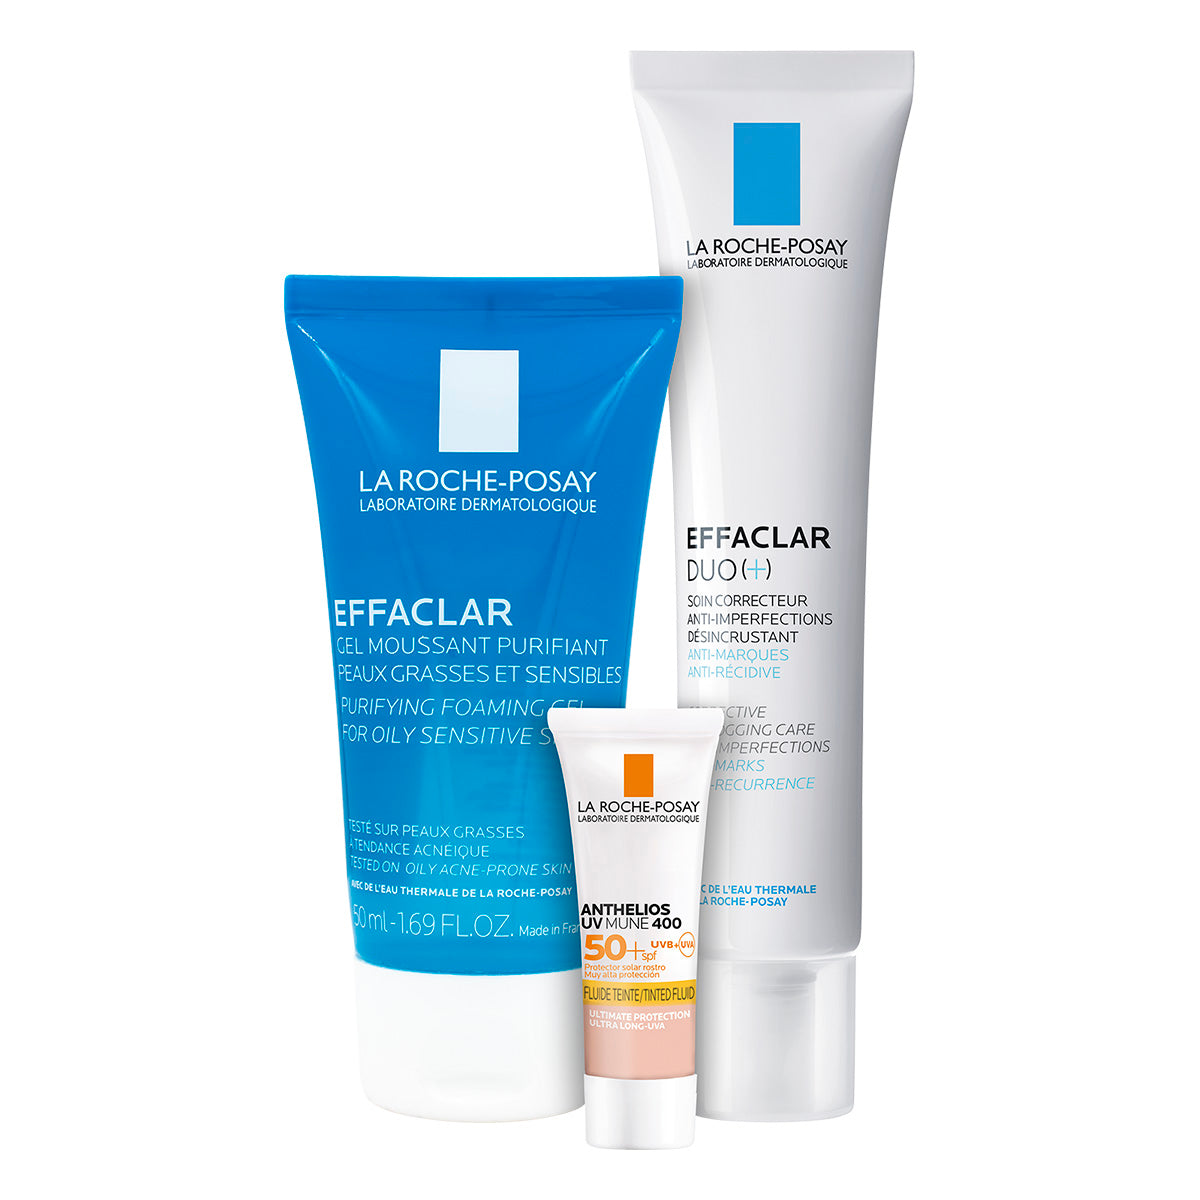 La Roche Posay Effaclar Duo+, Rutina para piel mixta a grasa con tendencia acneica, Kit Effaclar Duo+ Effaclar Gel + Anthelios UV MUNE 400 Fluido Con Color